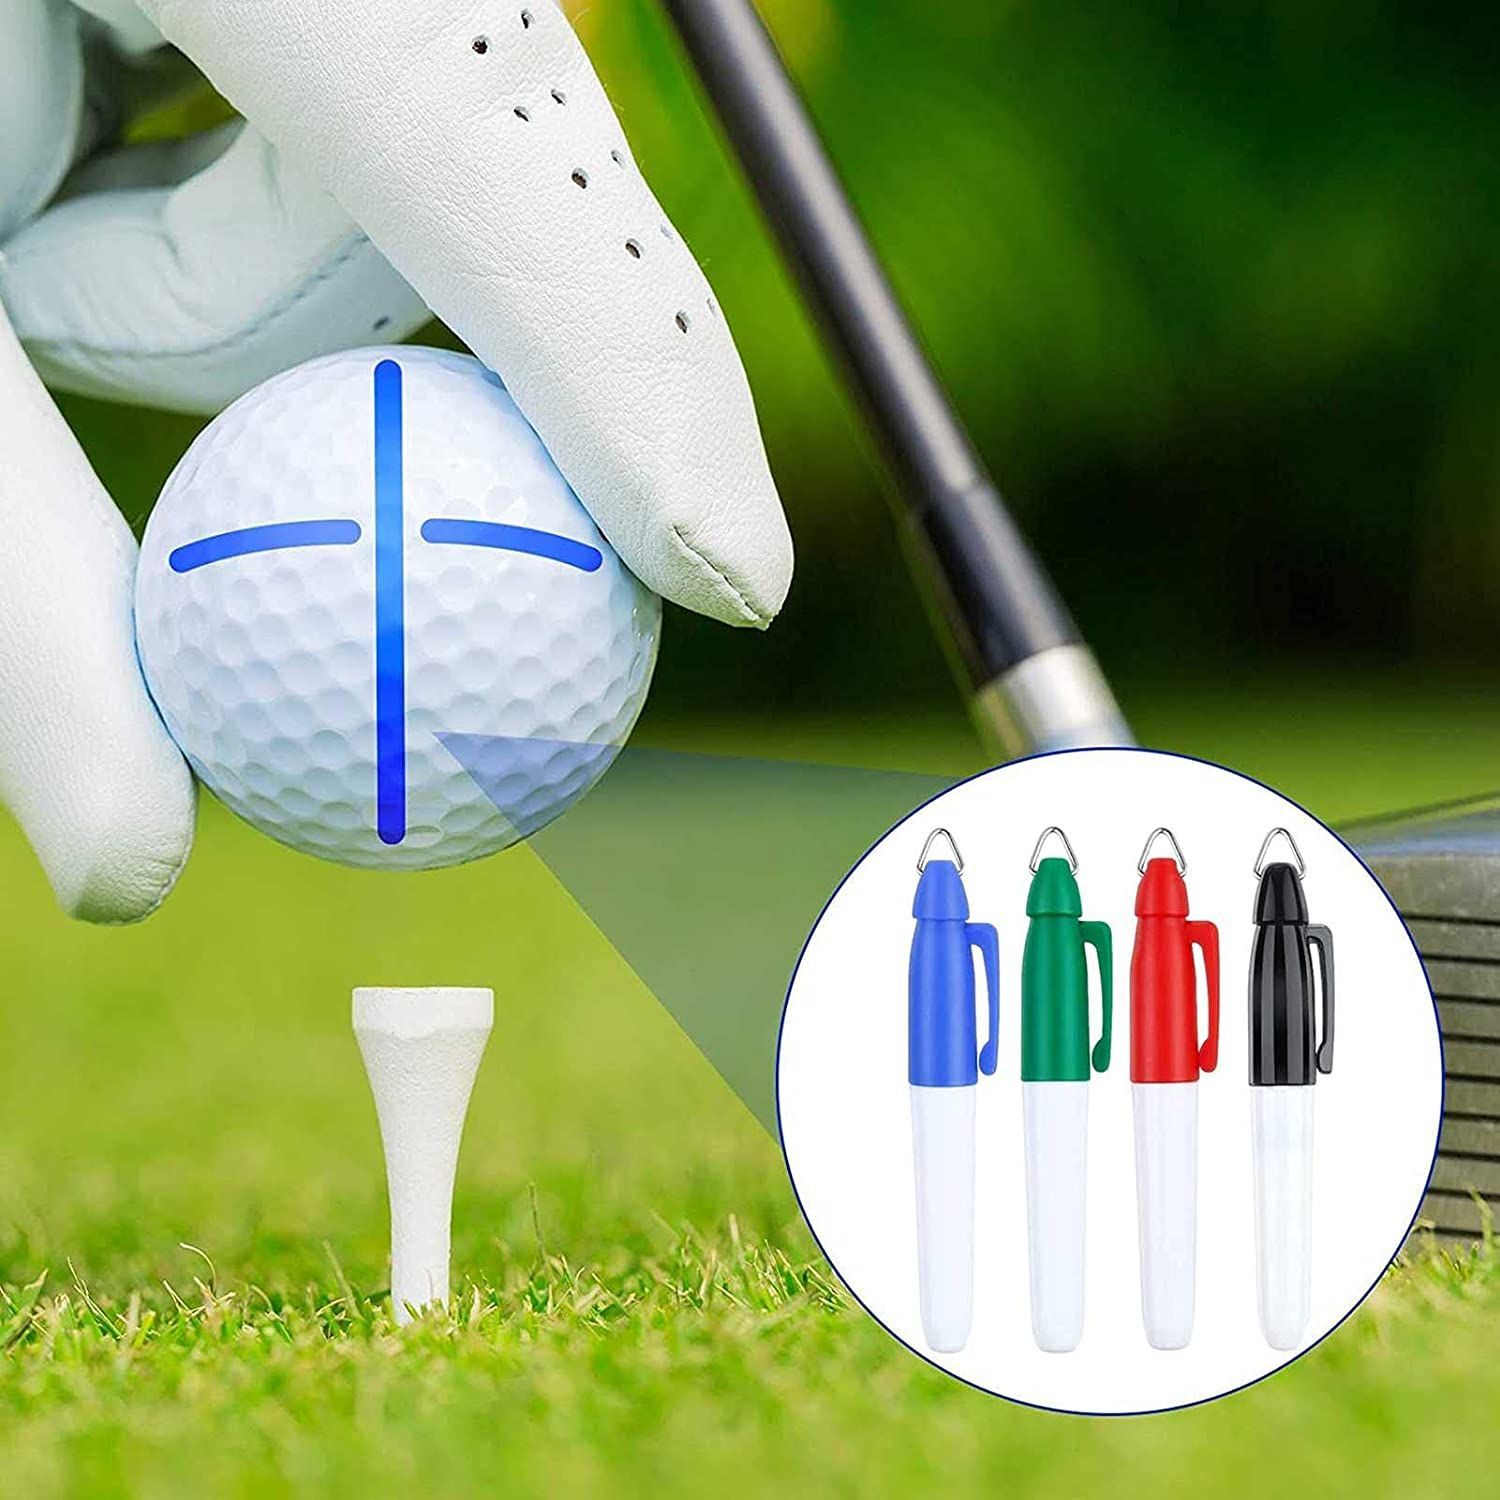 売れ筋商品売れ筋商品ゴルフ マーカー 持ち運び便利 パッティング練習器 ボールラインマーカー 簡単に線が引ける 図形描画 テンプレートのリニアパット位置を決め  ボールマークアライメントがクリップツール メンズウェア